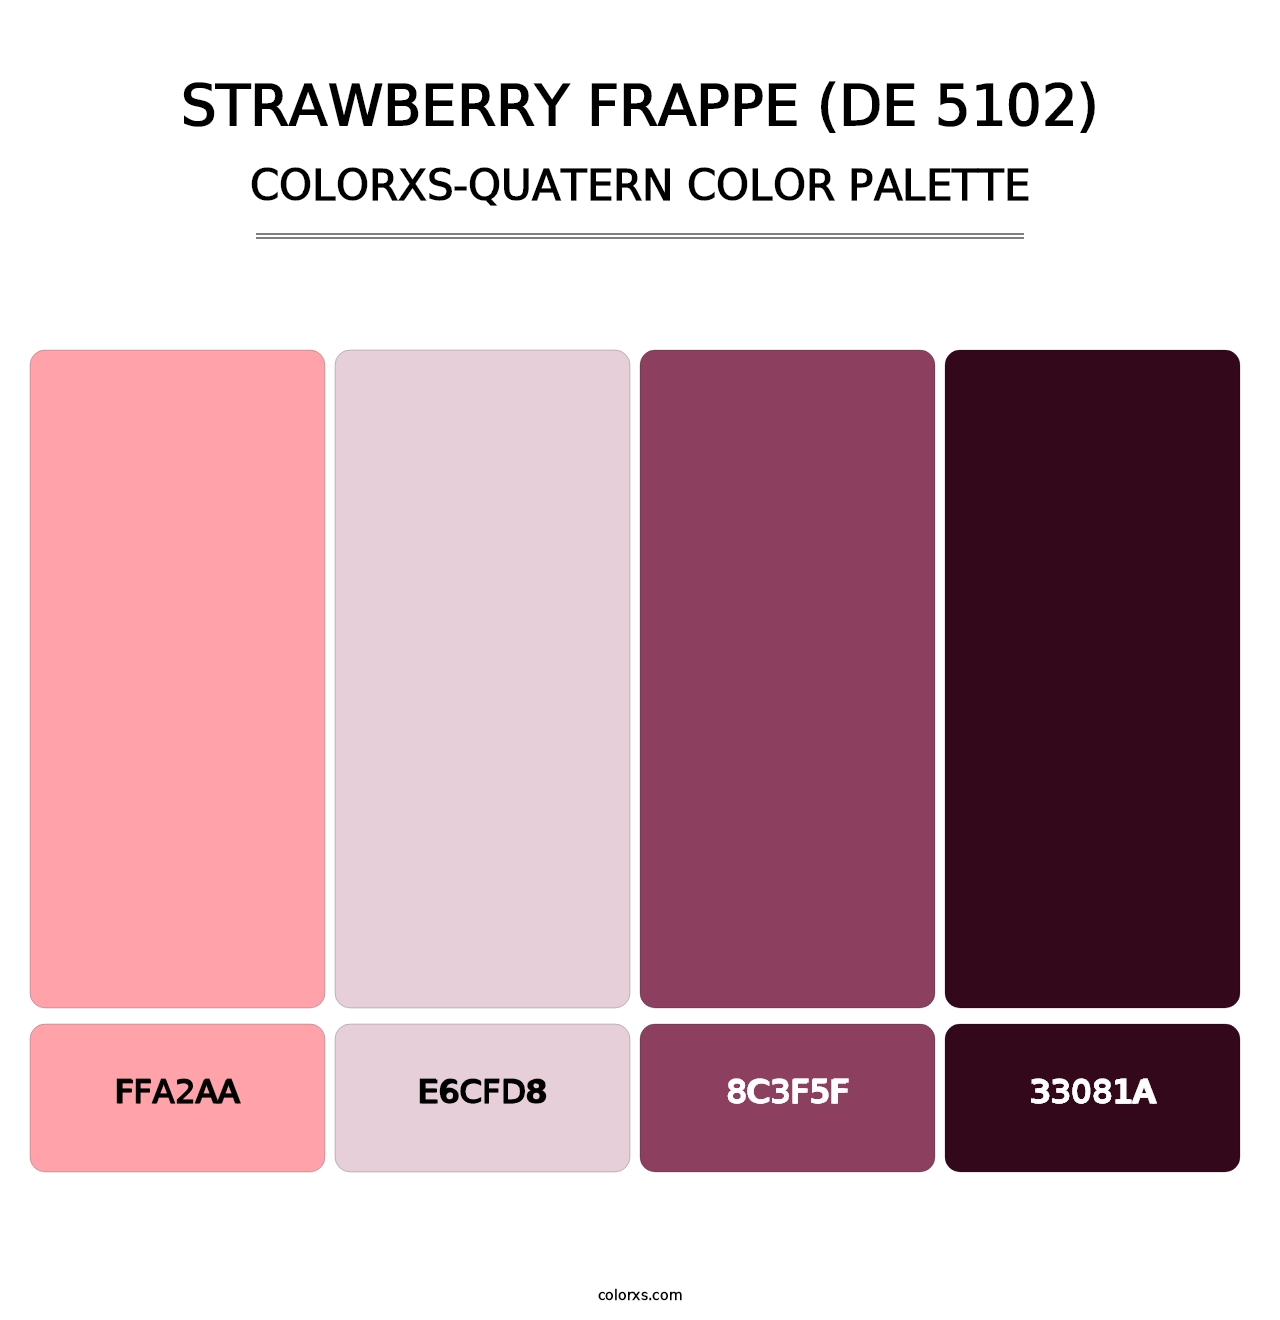 Strawberry Frappe (DE 5102) - Colorxs Quatern Palette